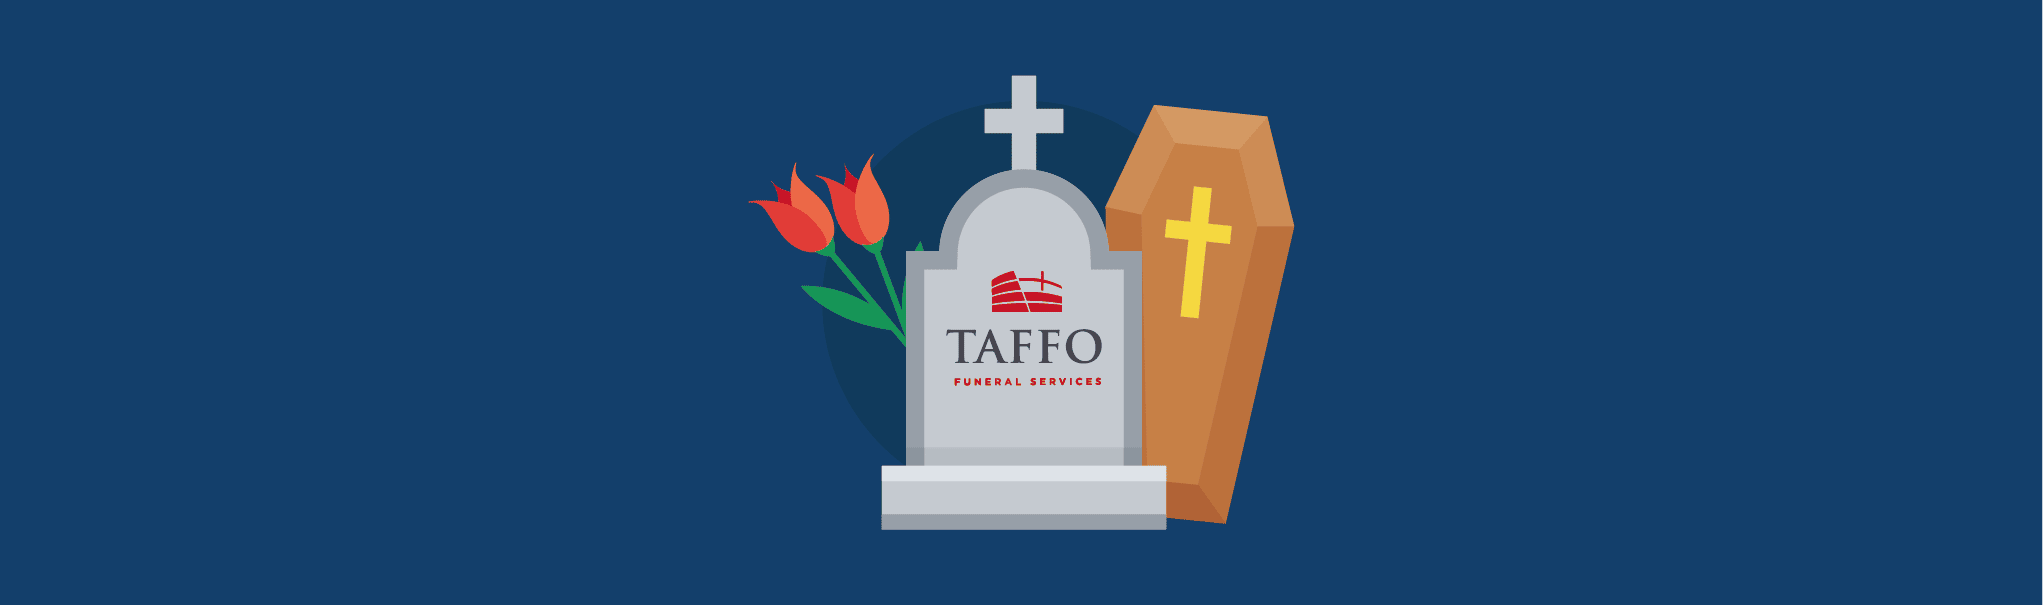 La strategia marketing di Taffo è una delle più chiacchierate del web, ma sarà veramente così efficace come sembra?